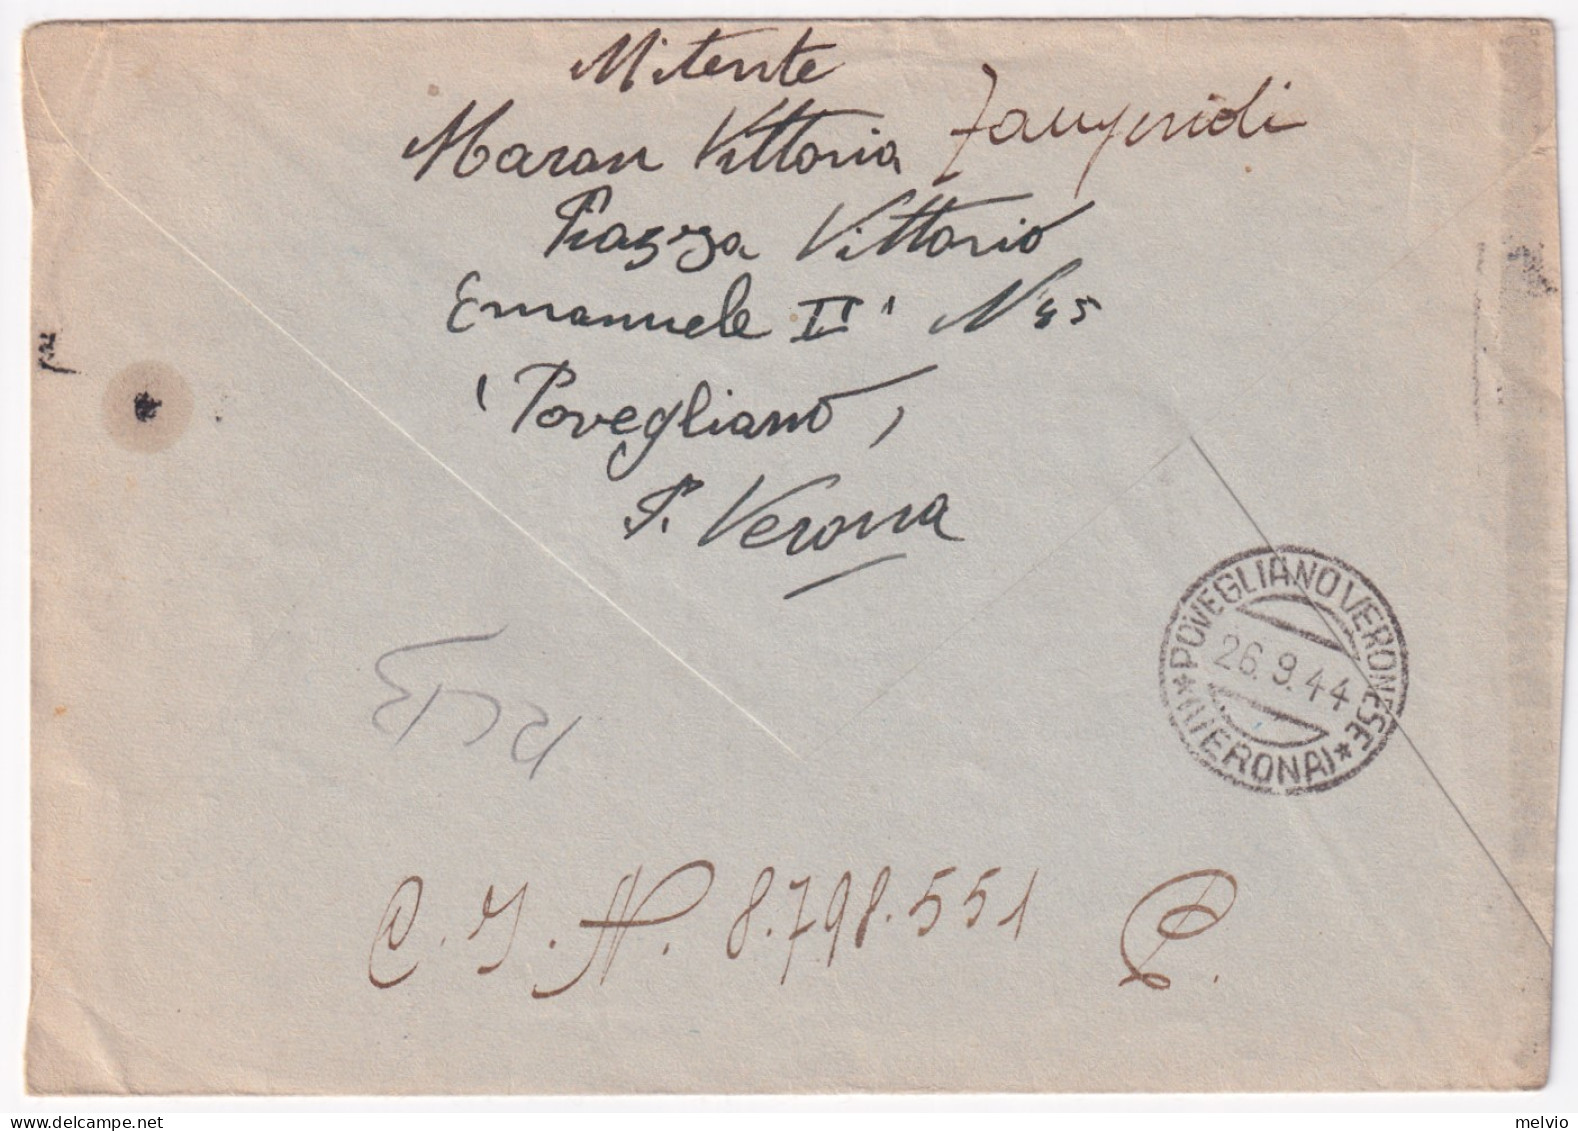 1944-Imperiale Sopr. RSI Lire 1,25 (495) Isolato Su Busta Povegliano (26.9) Per  - Marcophilie